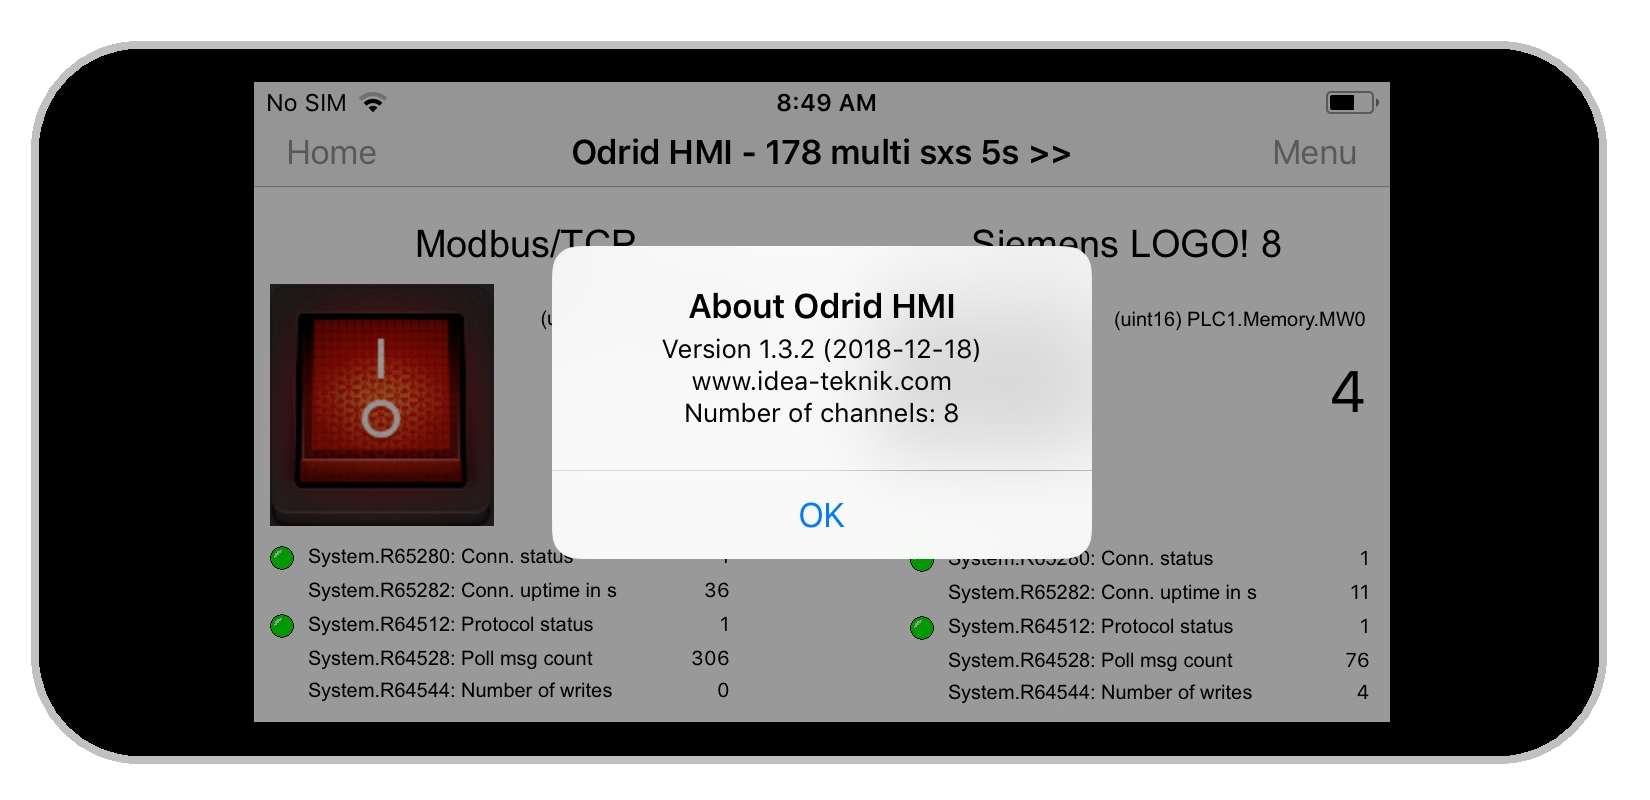 Odrid HMI 1.3.2 on an Iphone 5s